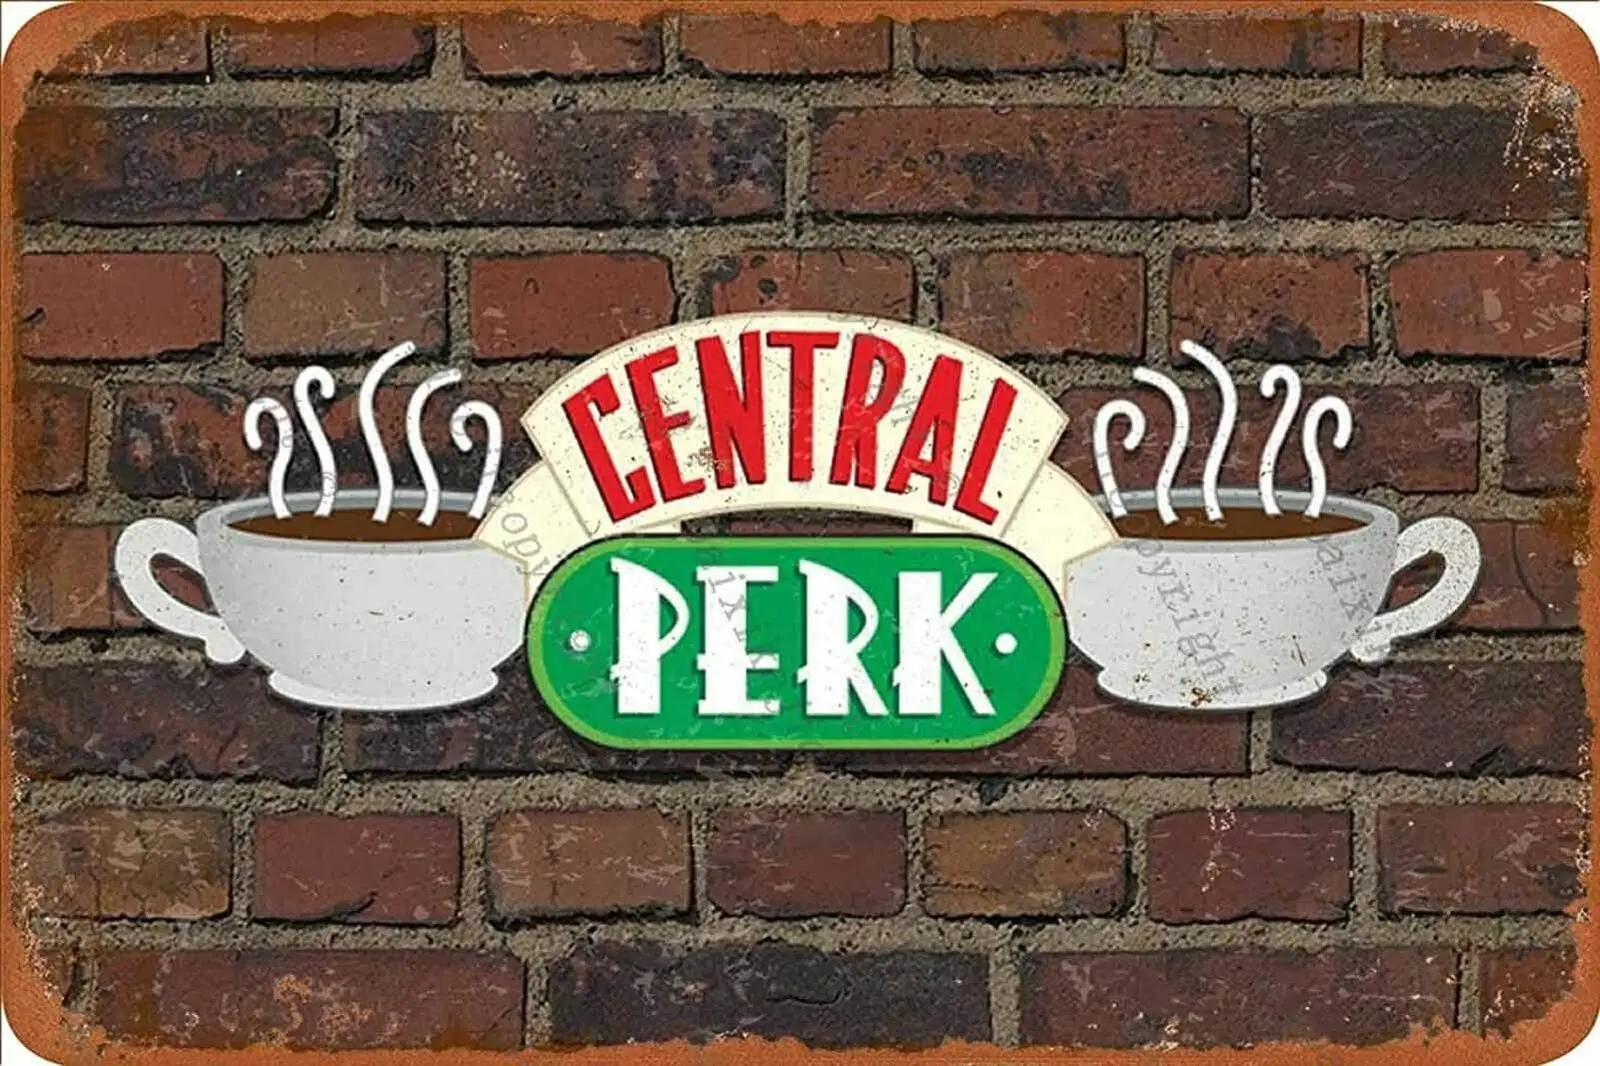 

Ghost B Vintage Central Perk Retro Tin Sign Poster Plaque Wall Decor for Bar Cafe Garden